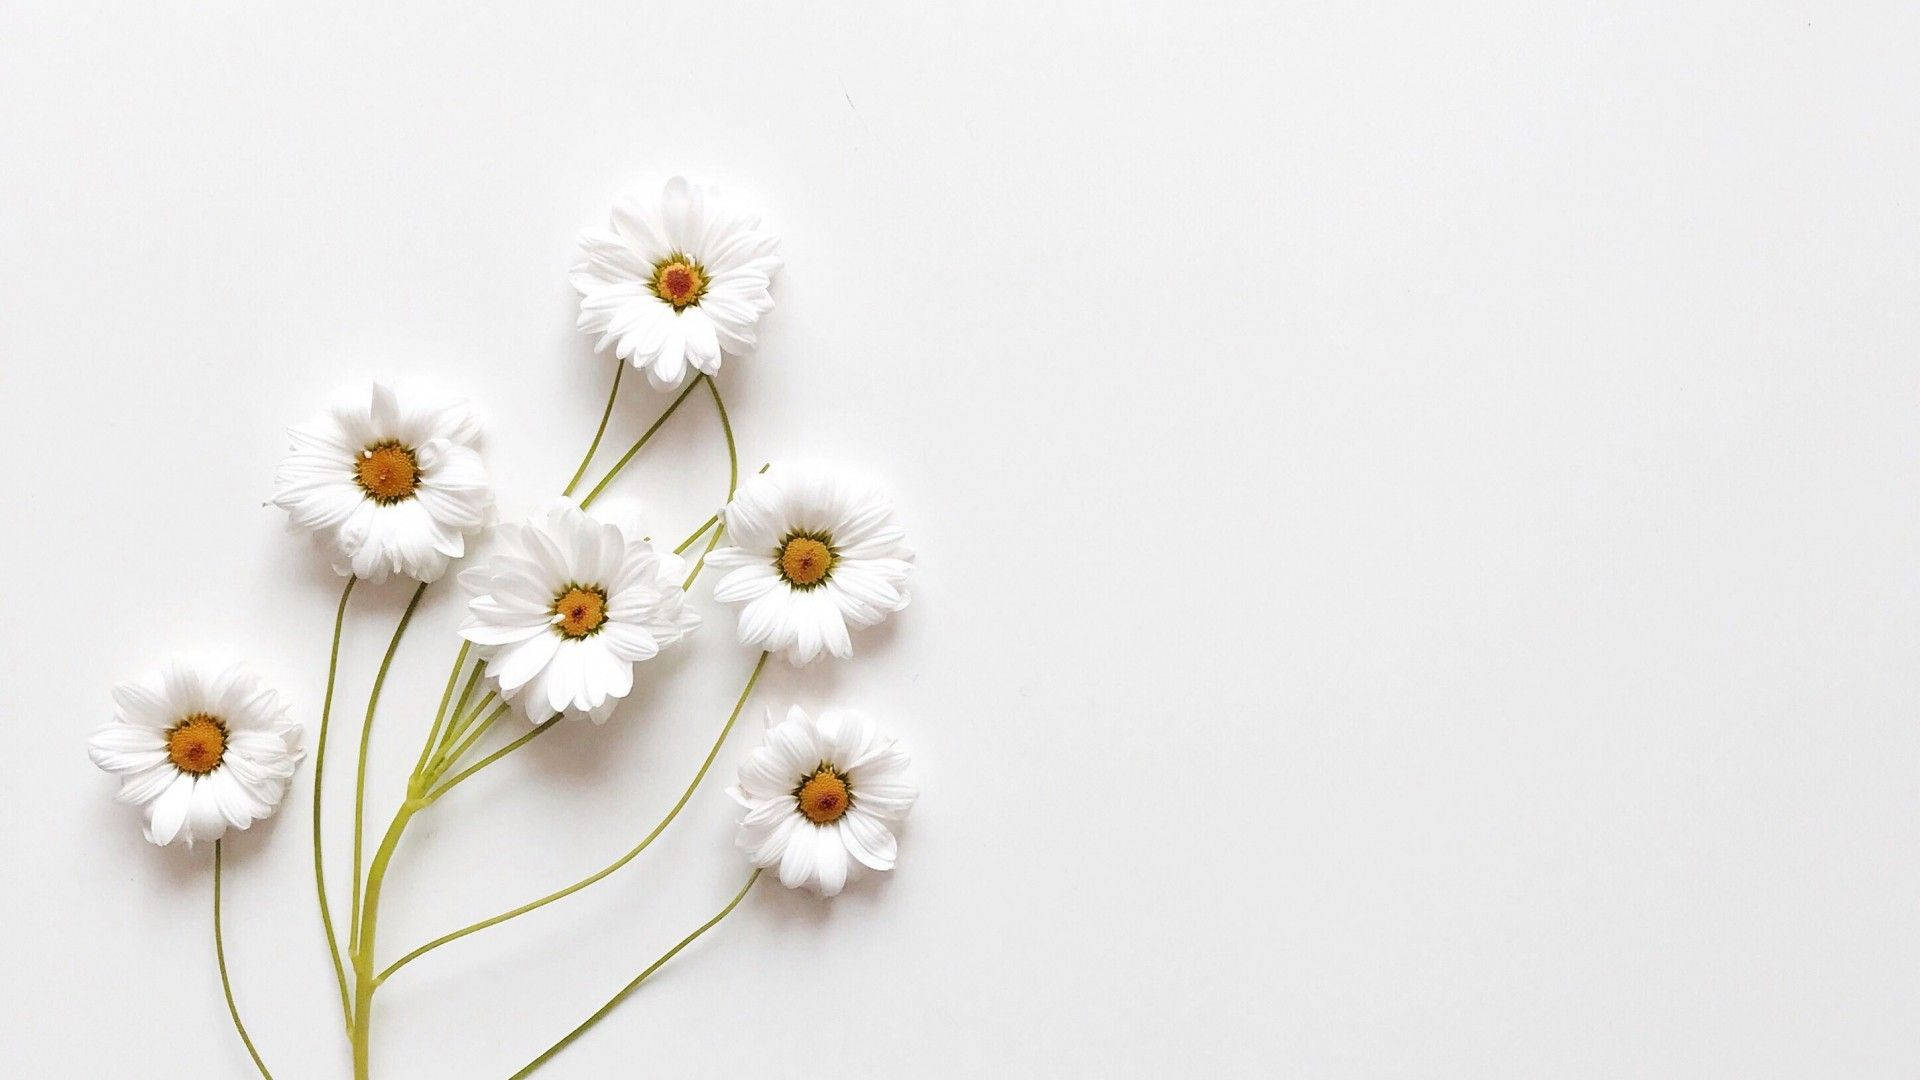 Aesthetic White Lovely Flowers Background